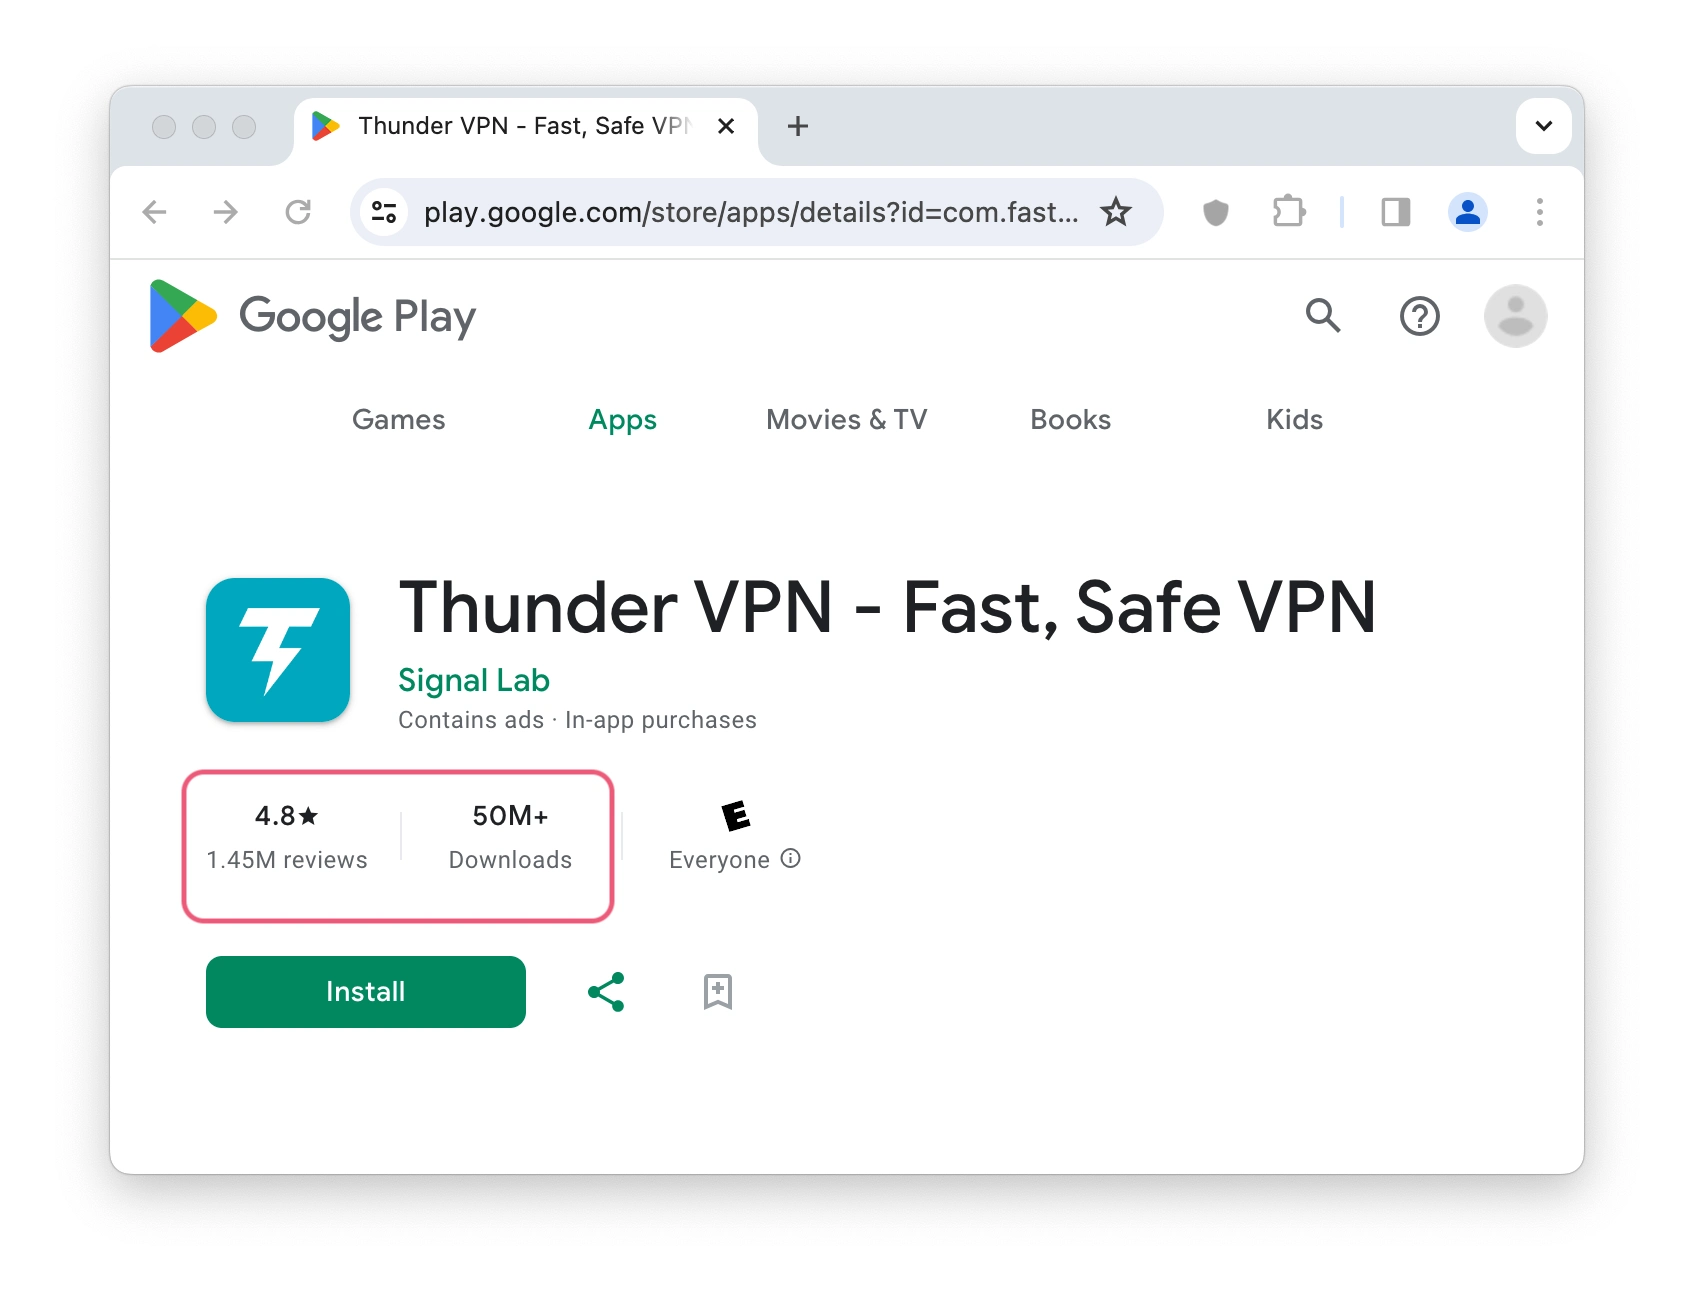 Thunder VPN's Google Play Store listing